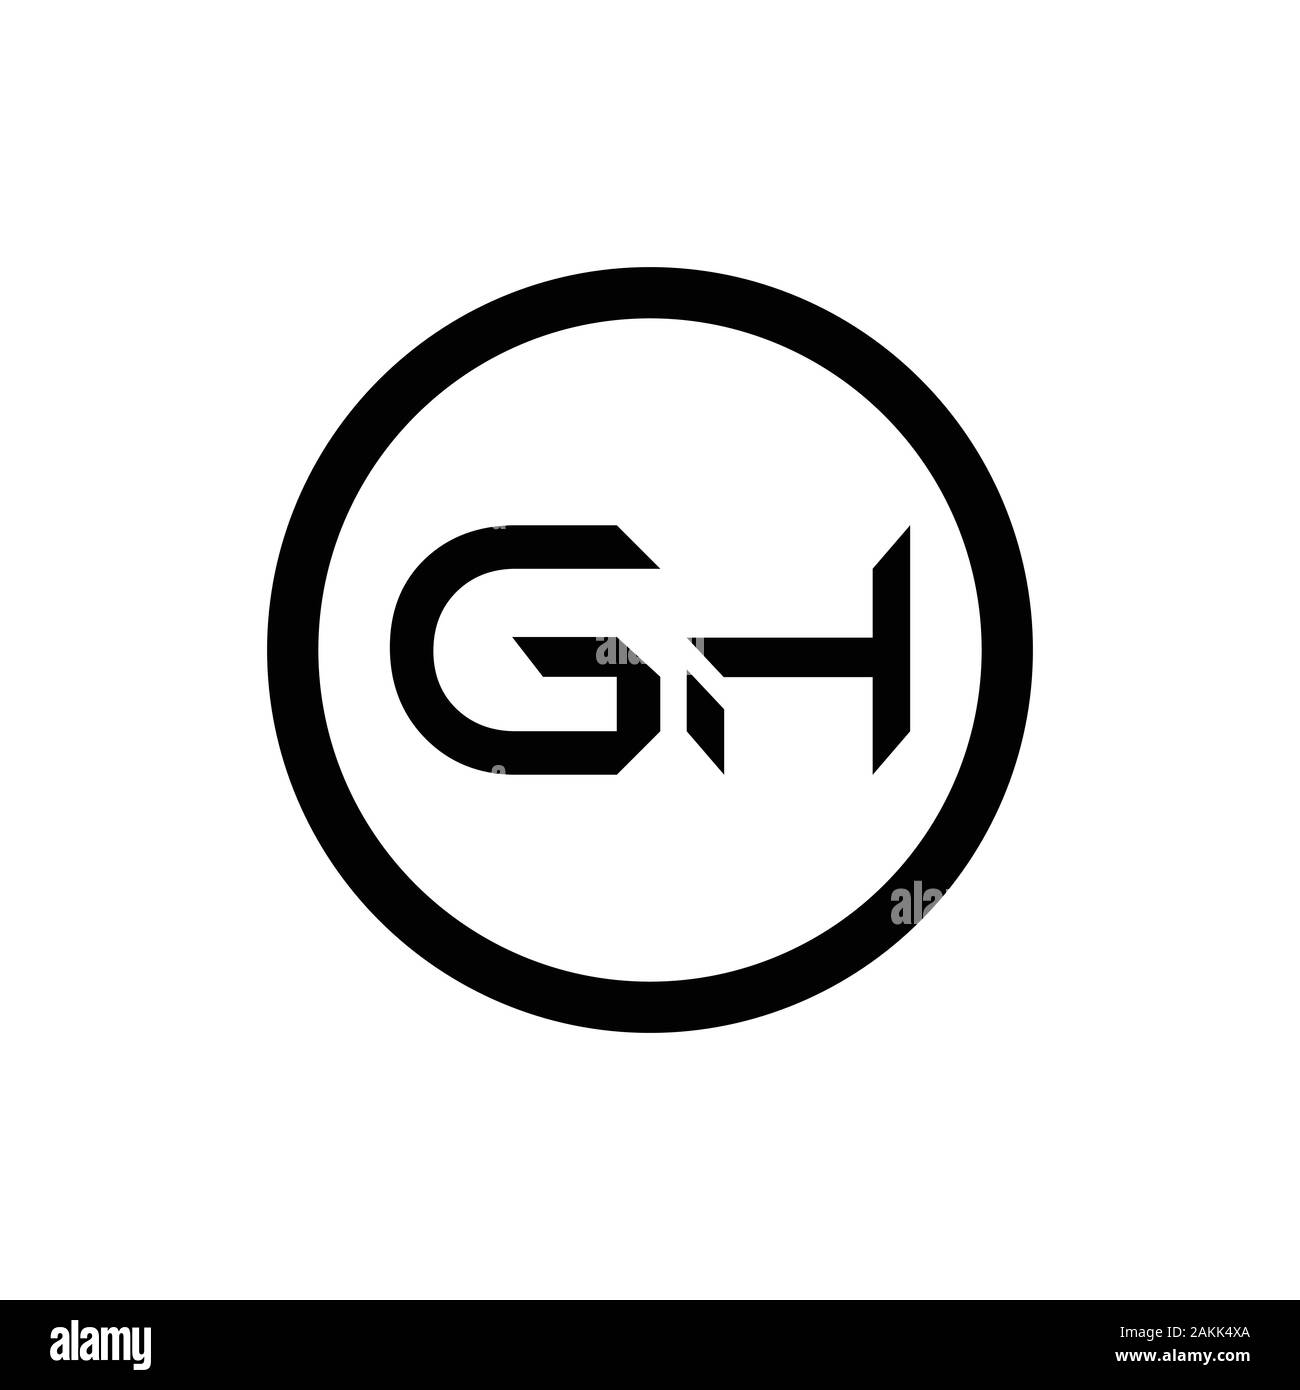 Initial GH Letter Linked Logo. GH letter Type Logo Design vector ...